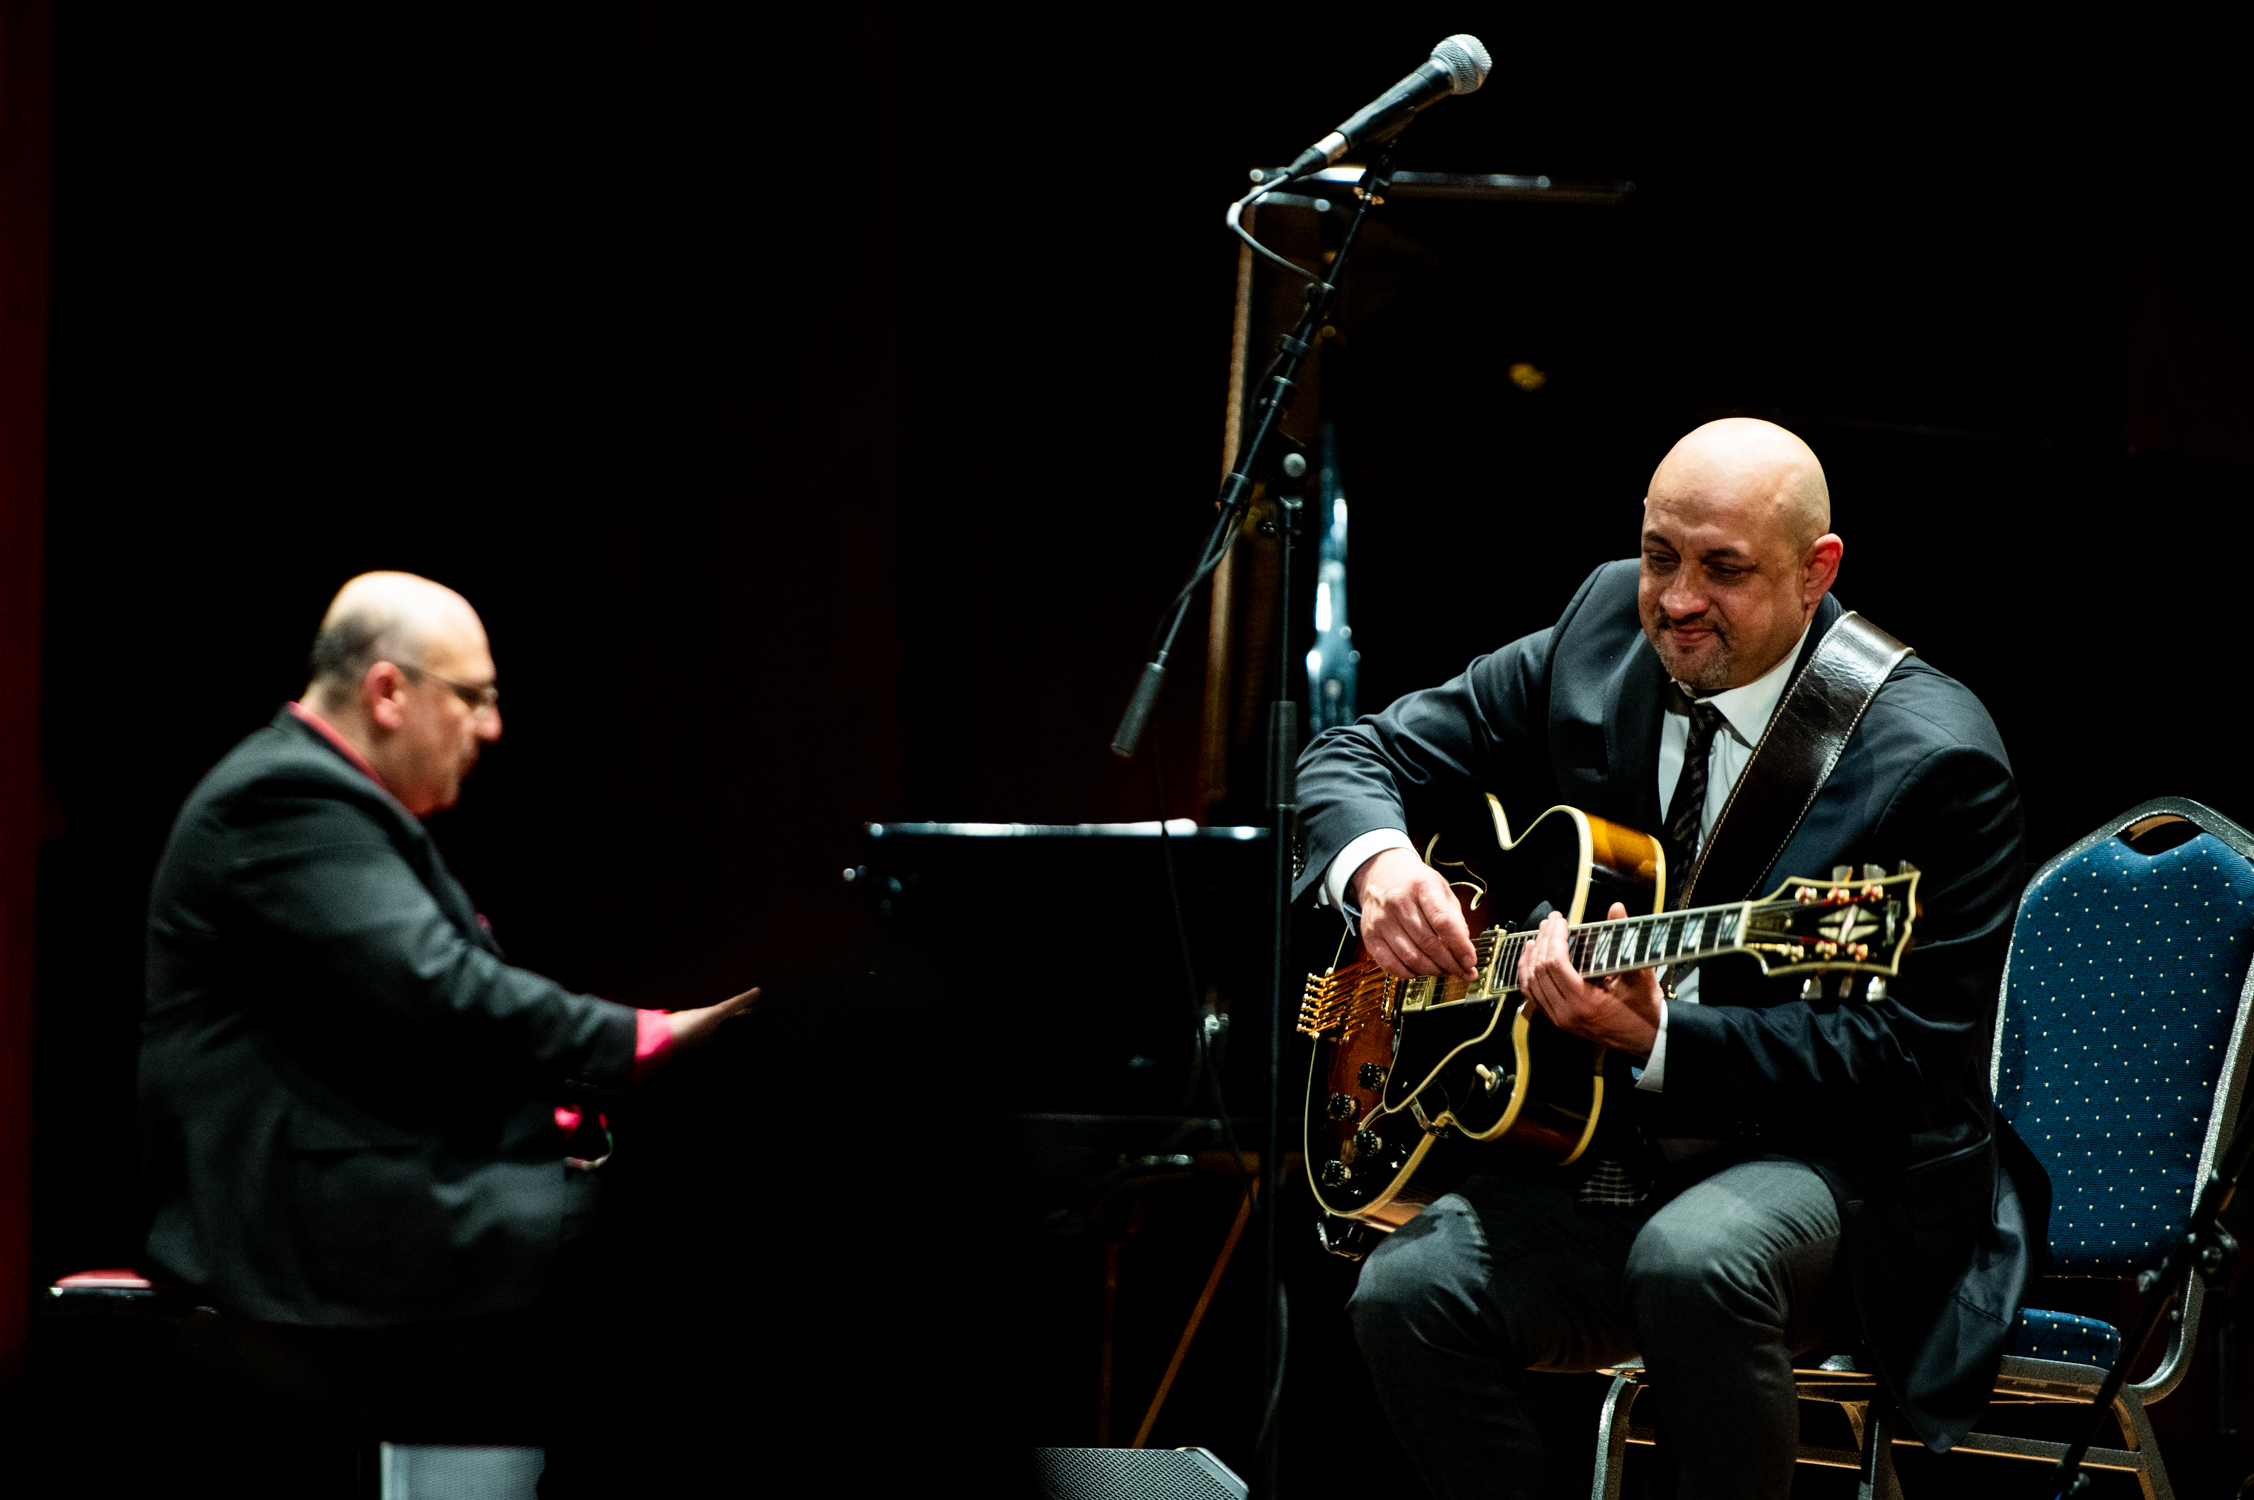 Auf einer Bühne: Links sitzt ein Mann an einem Flügel, rechts ein Mann mit Gitarre.